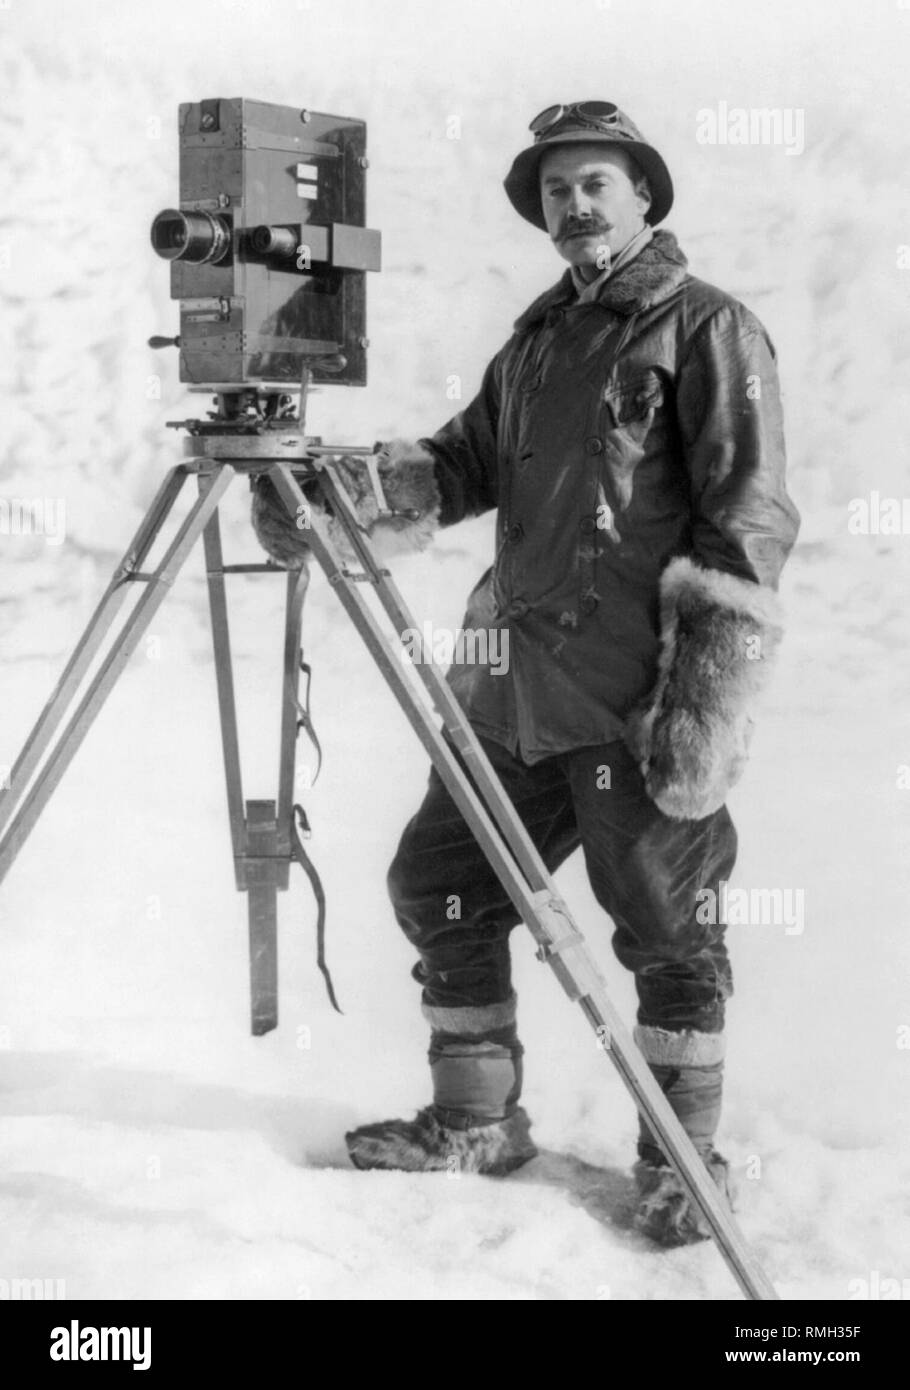 Célèbre photographe herbert ponting et son appareil photo une partie de l'expédition Terra Nova au cours de l'expédition Antarctique Britannique en Antarctique Photo prise 1910 Banque D'Images